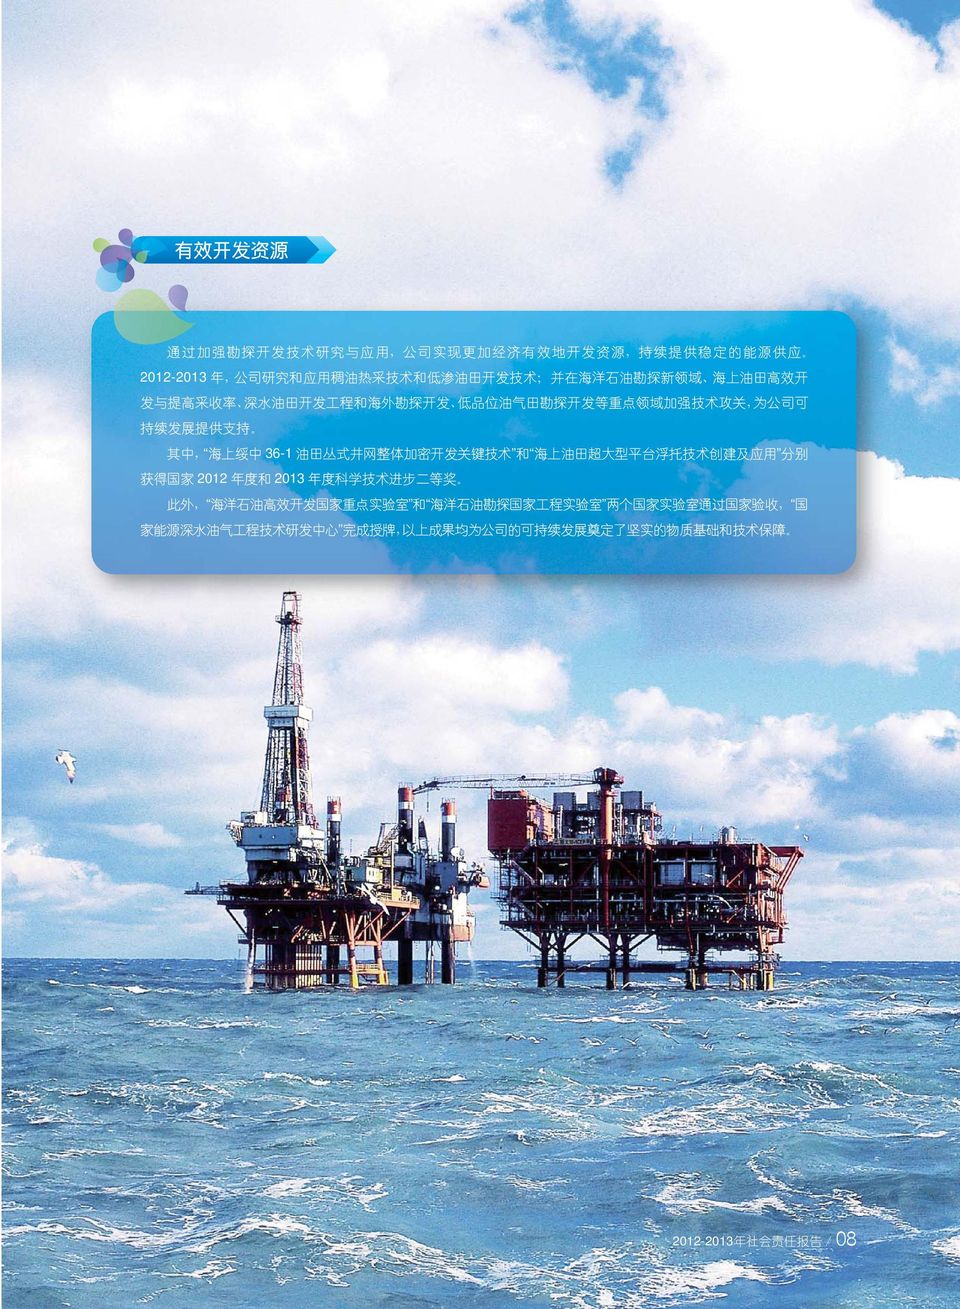 体 加 密 开 发 关 键 技 术 和 海 上 油 田 超 大 型 平 台 浮 托 技 术 创 建 及 应 用 分 别 获 得 国 家 2012 年 度 和 2013 年 度 科 学 技 术 进 步 二 等 奖 此 外, 海 洋 石 油 高 效 开 发 国 家 重 点 实 验 室 和 海 洋 石 油 勘 探 国 家 工